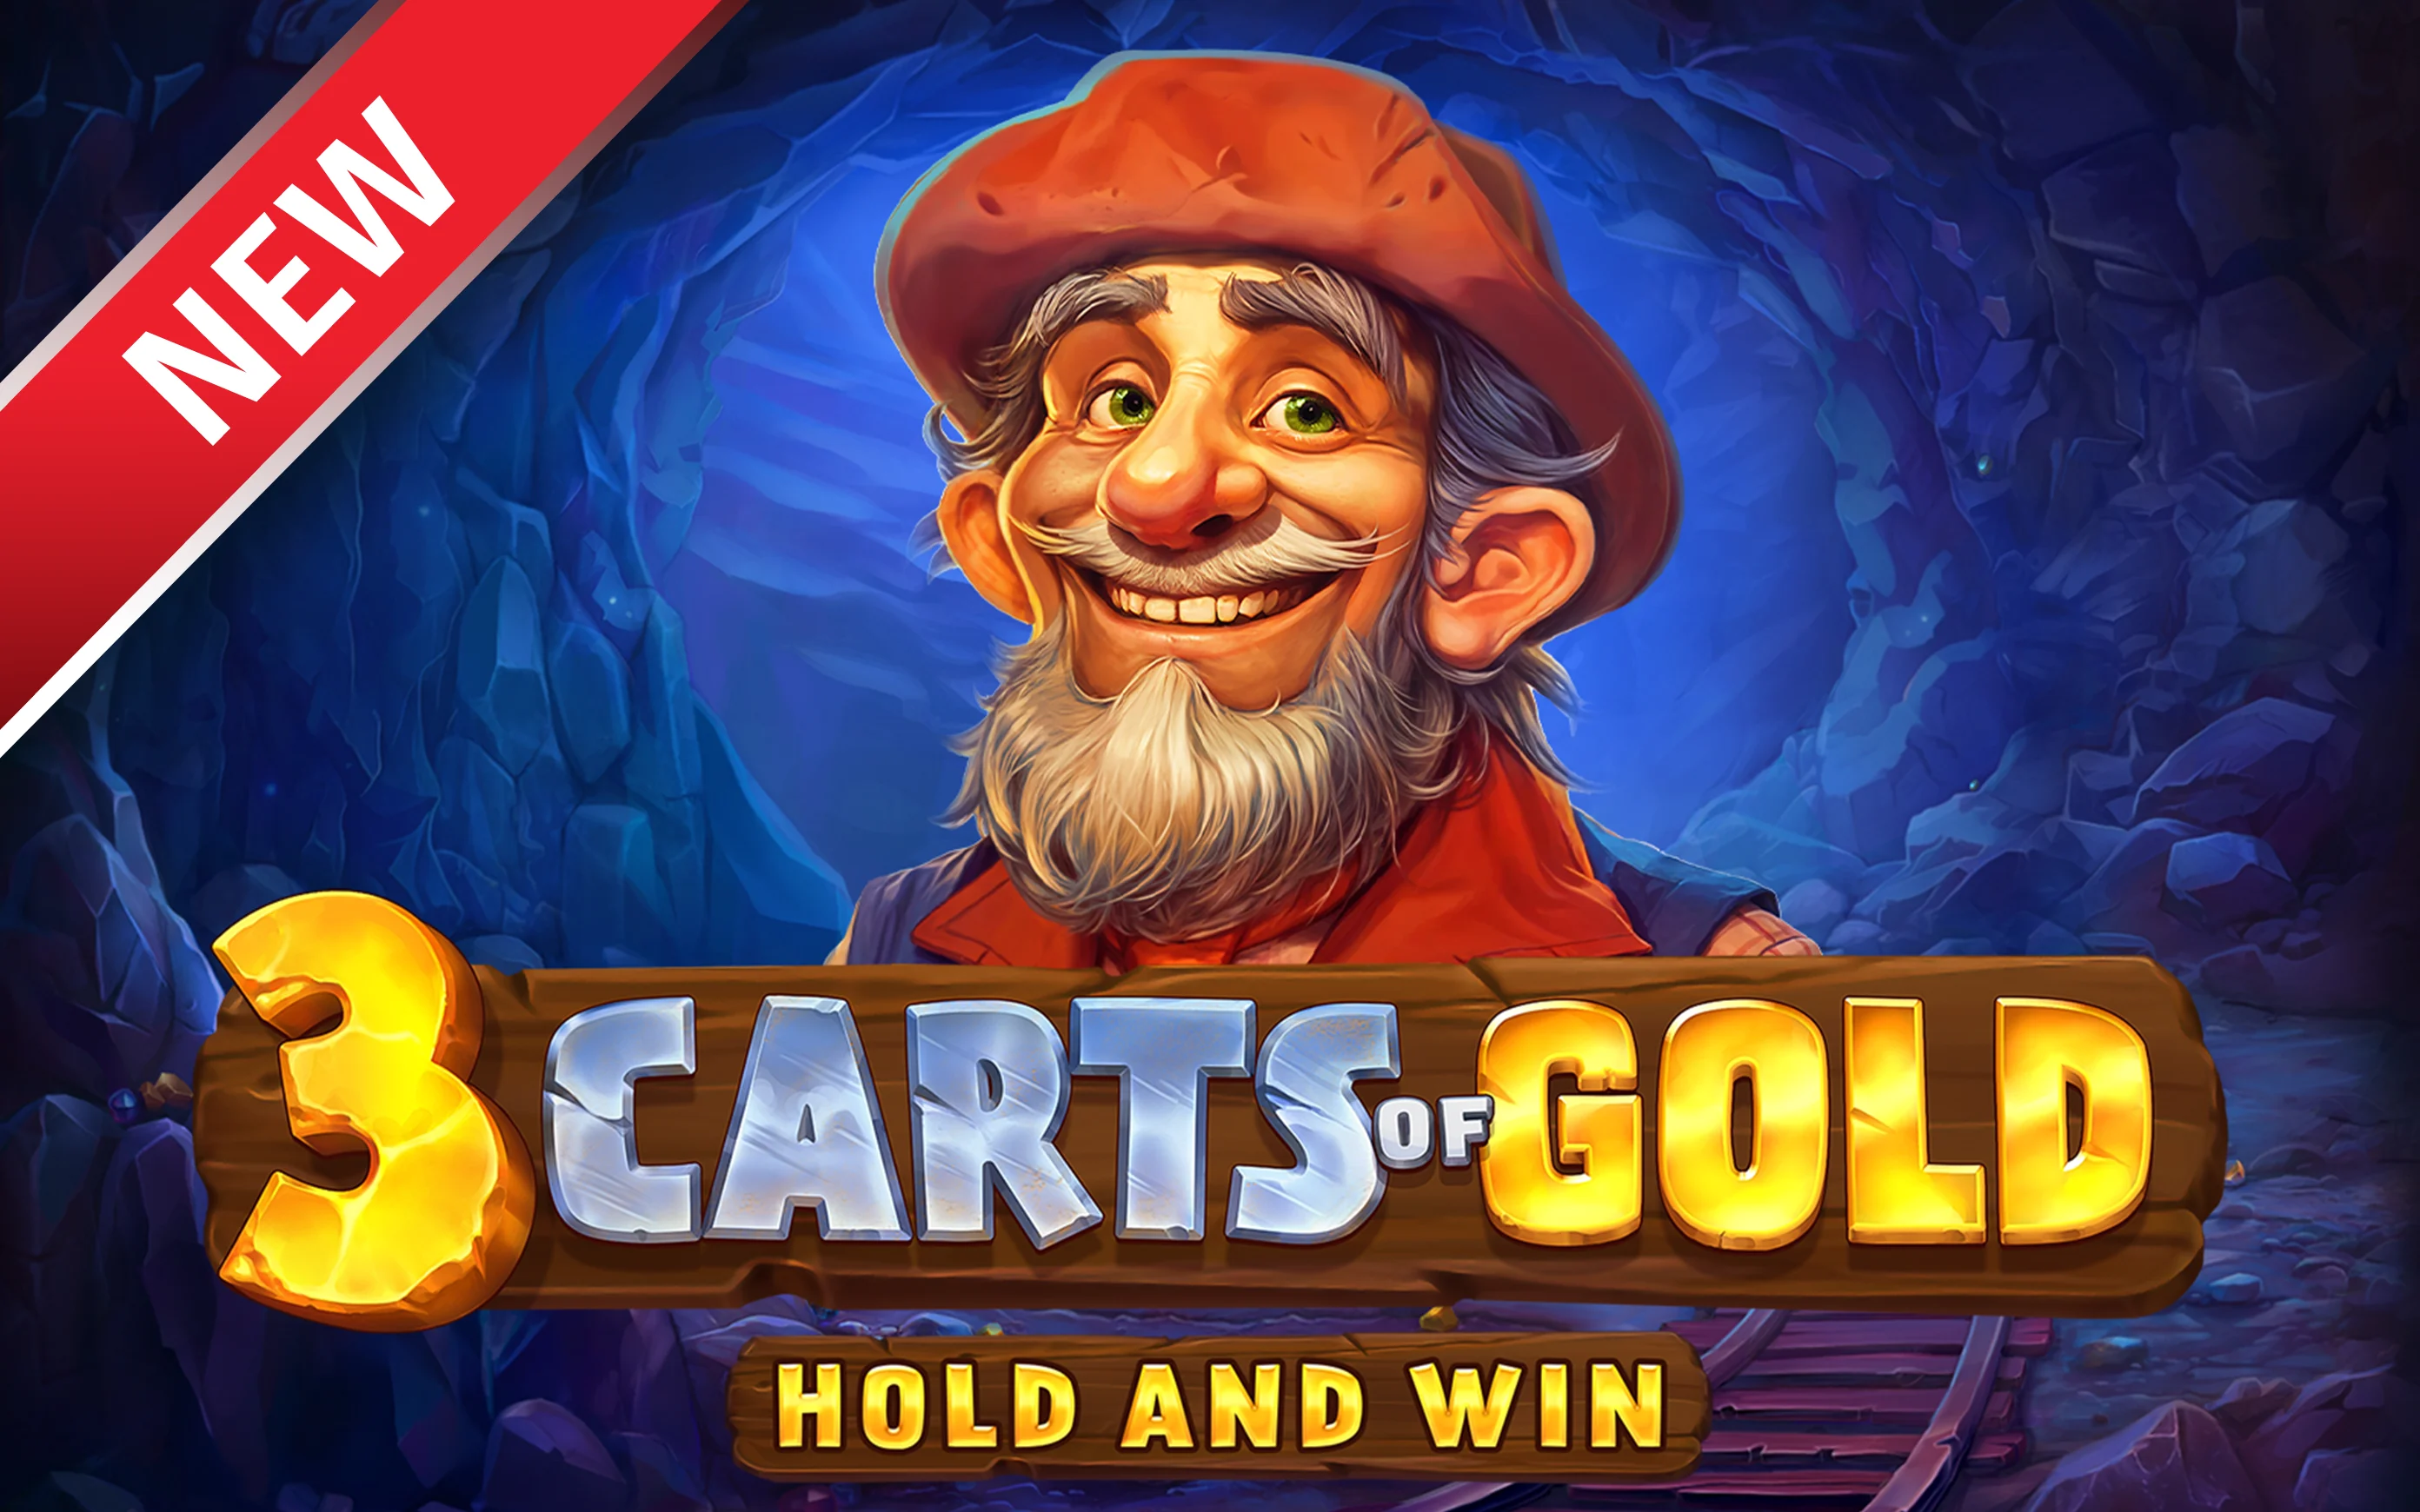 Играйте 3 Carts of Gold: Hold and Win на Starcasino.be онлайн казино